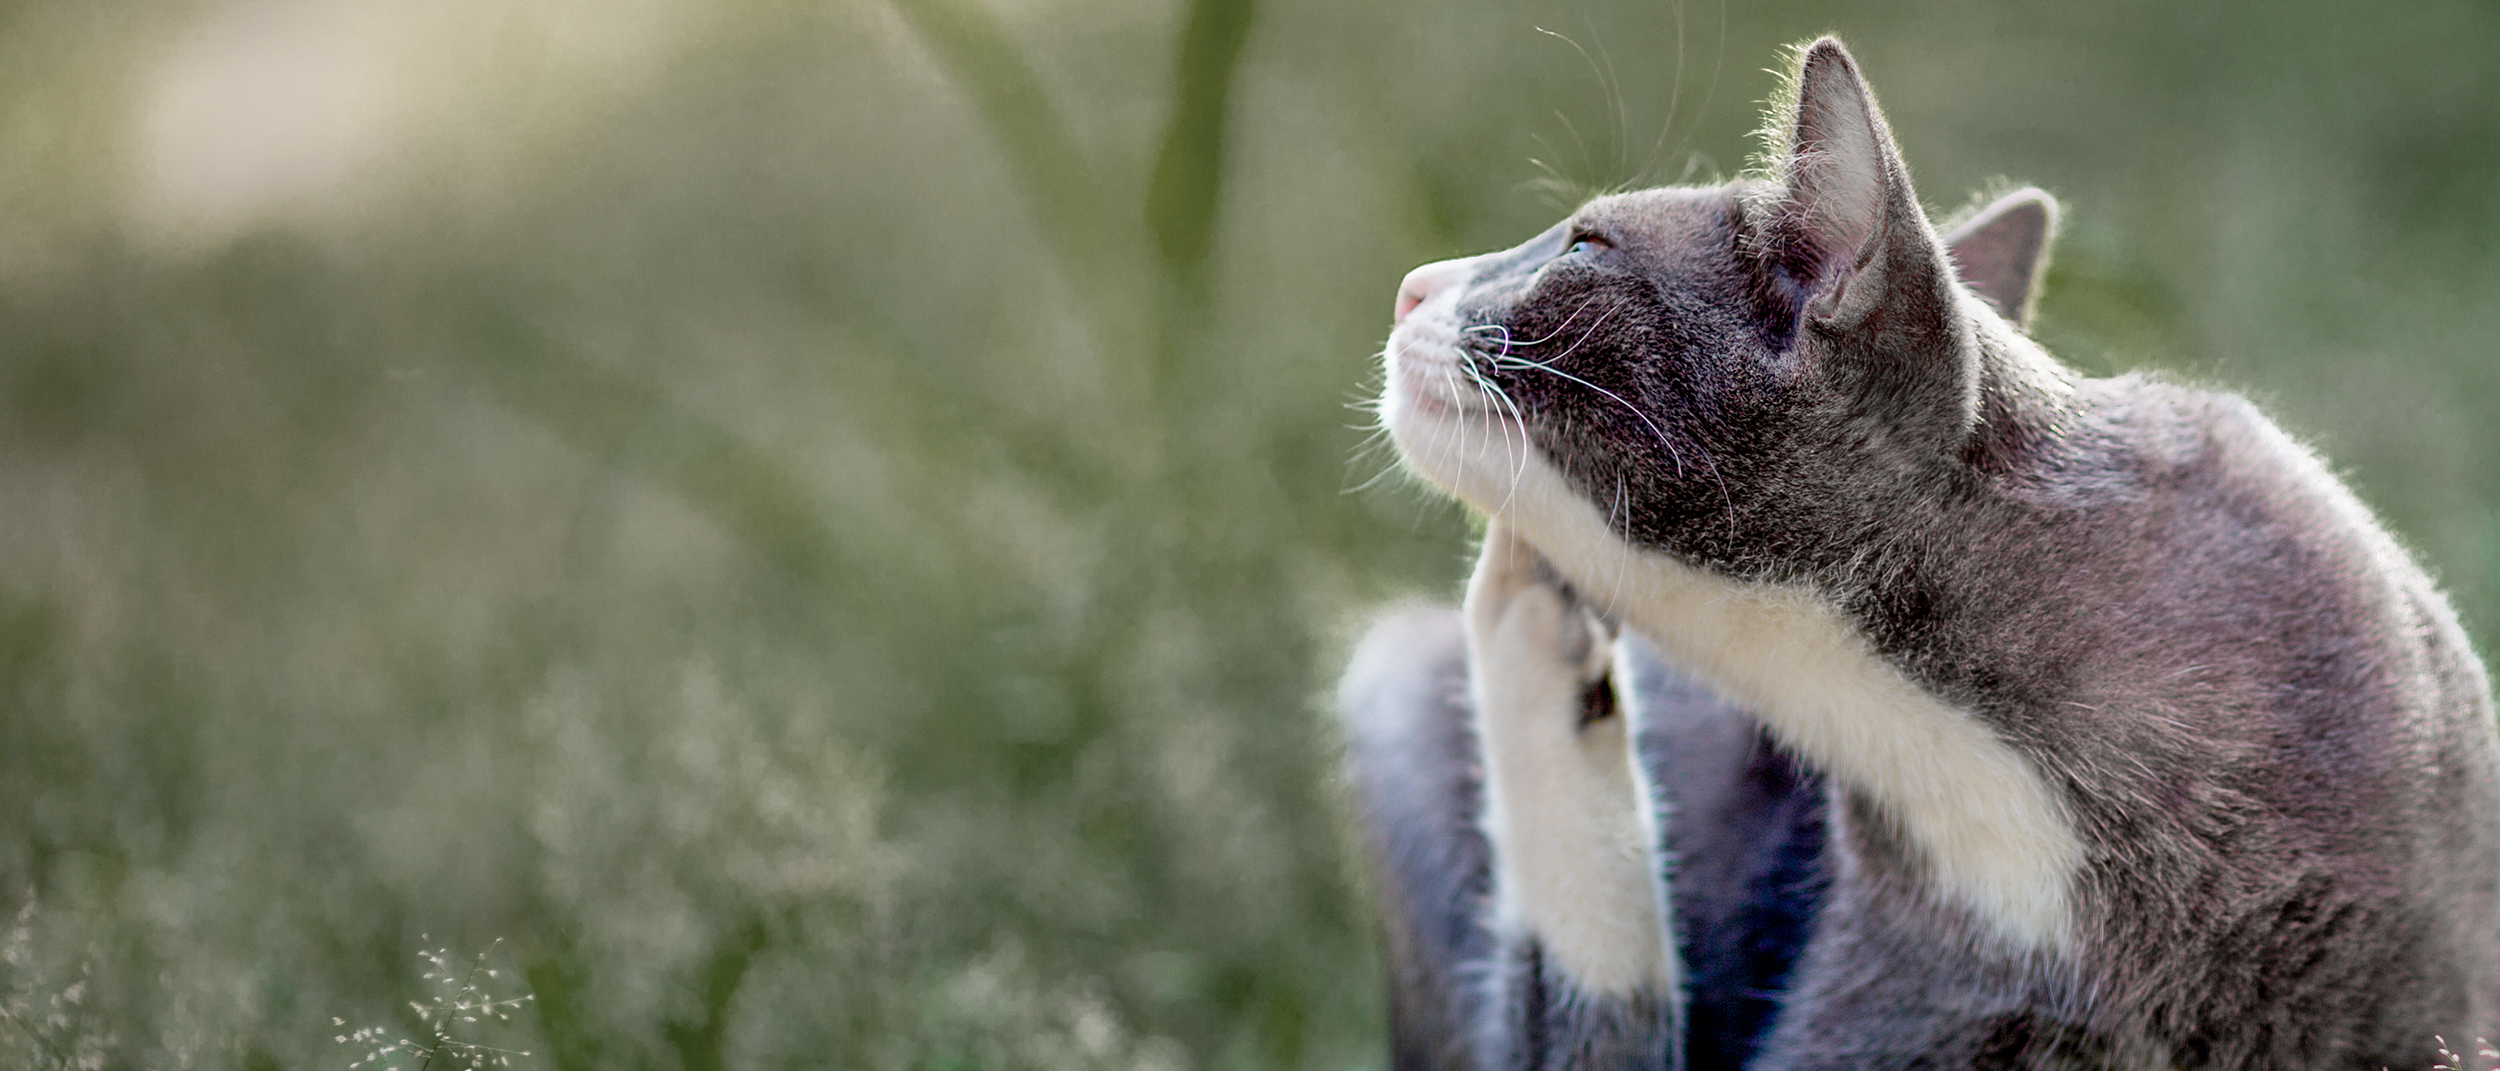 Аллергия у кошек - симптомы и причины аллергии | Royal Canin UA